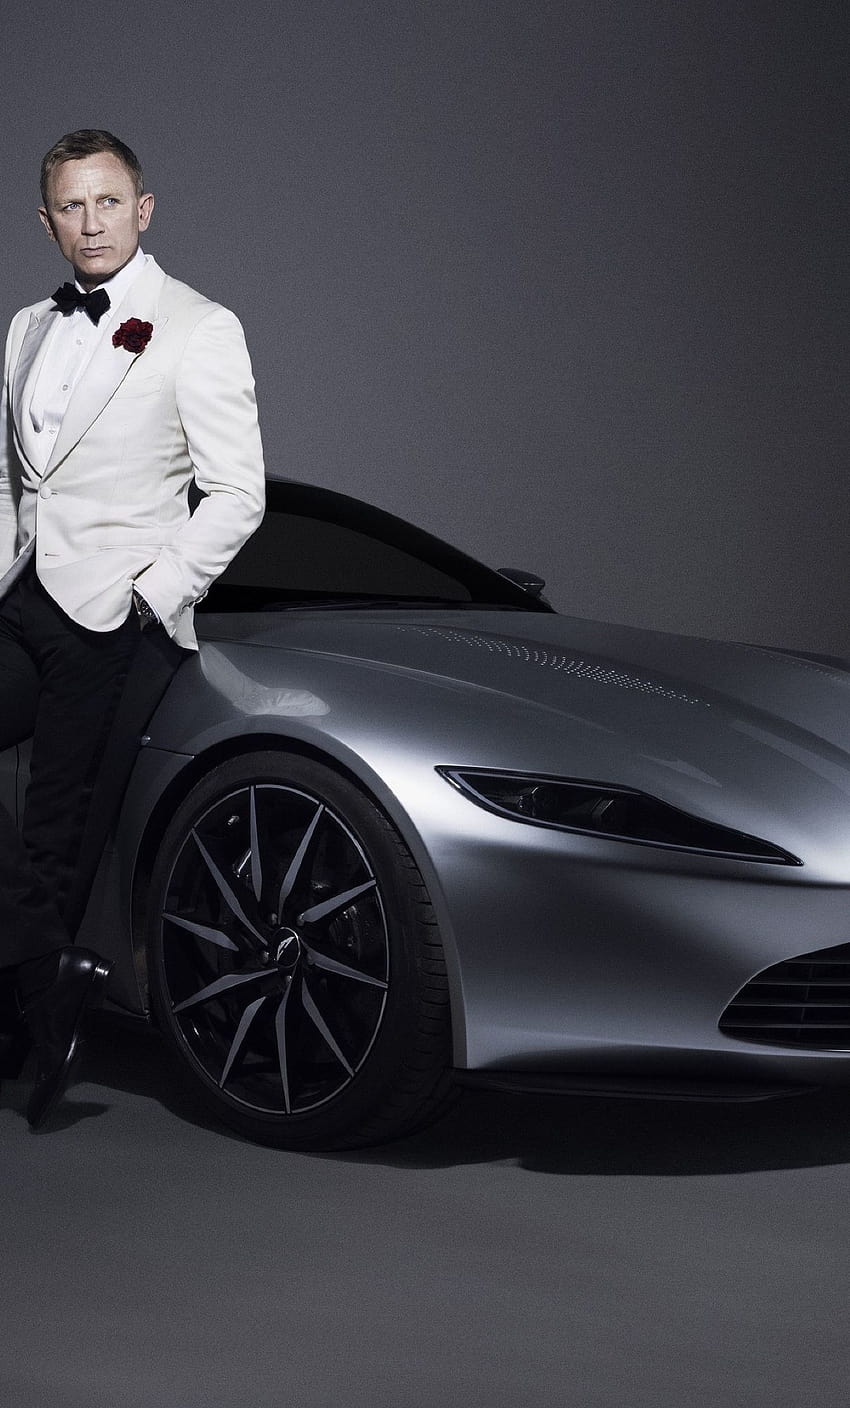 1280x2120 Daniel Craig 007 James Bond Aston Martin Car pitido, 007 logo iphone fondo de pantalla del teléfono